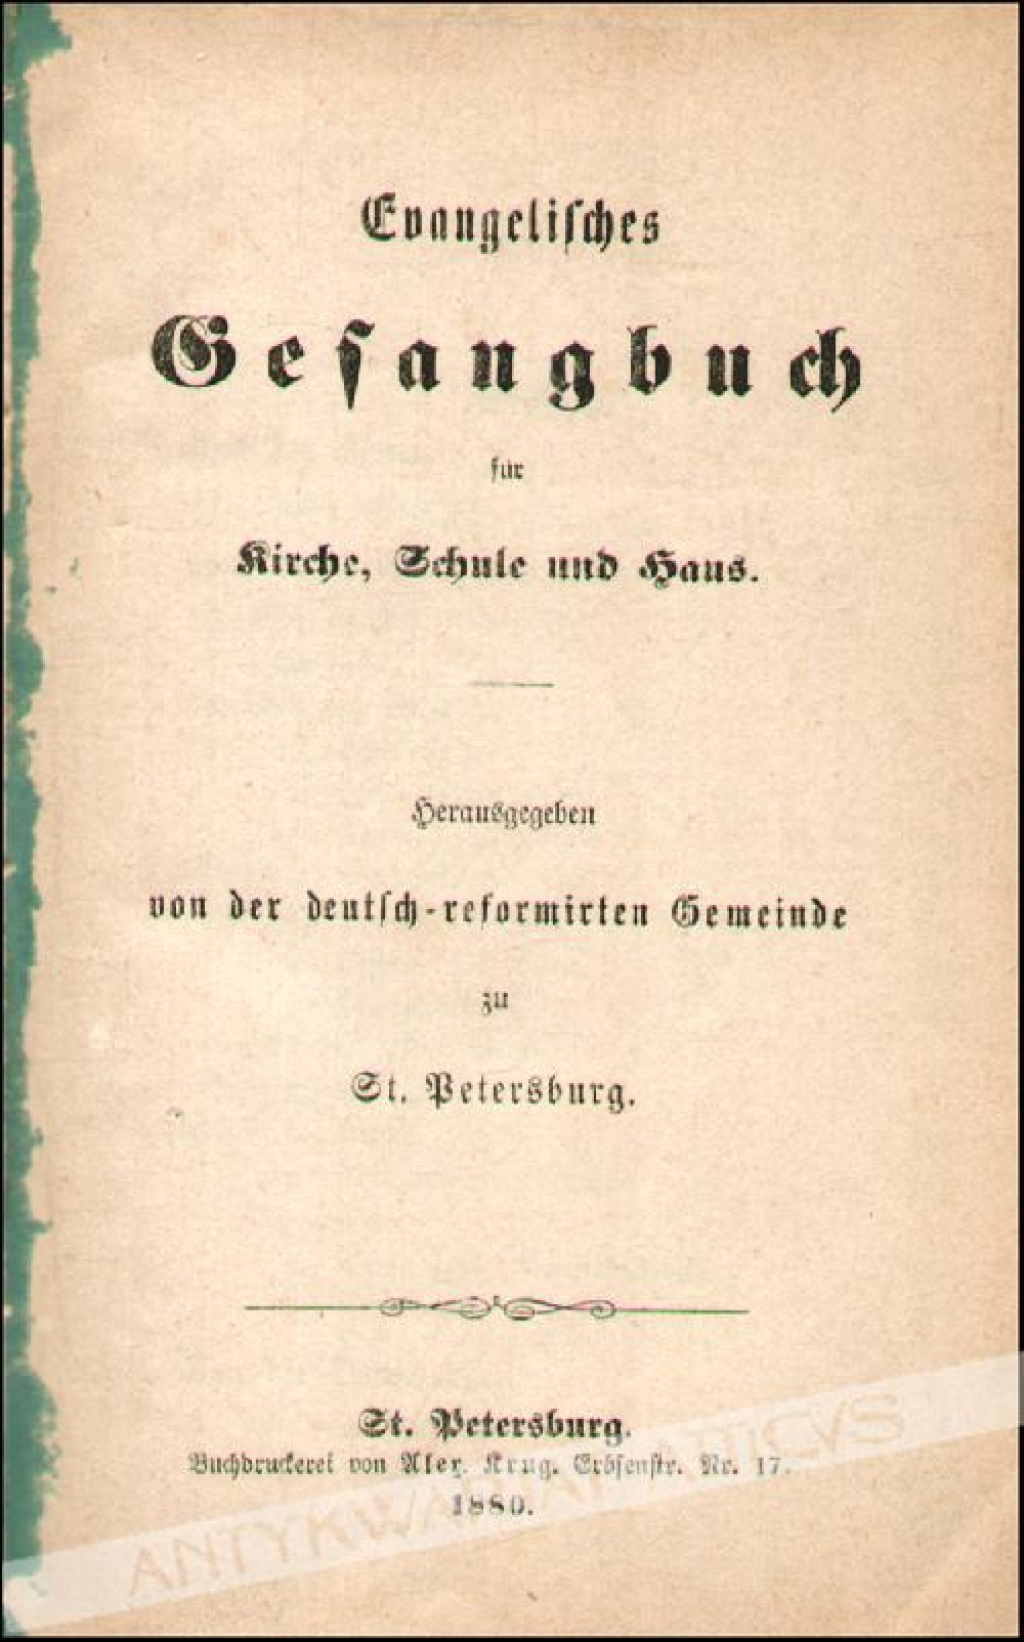 Evangelisches Gesangbuch für Kirche, Schule und Haus